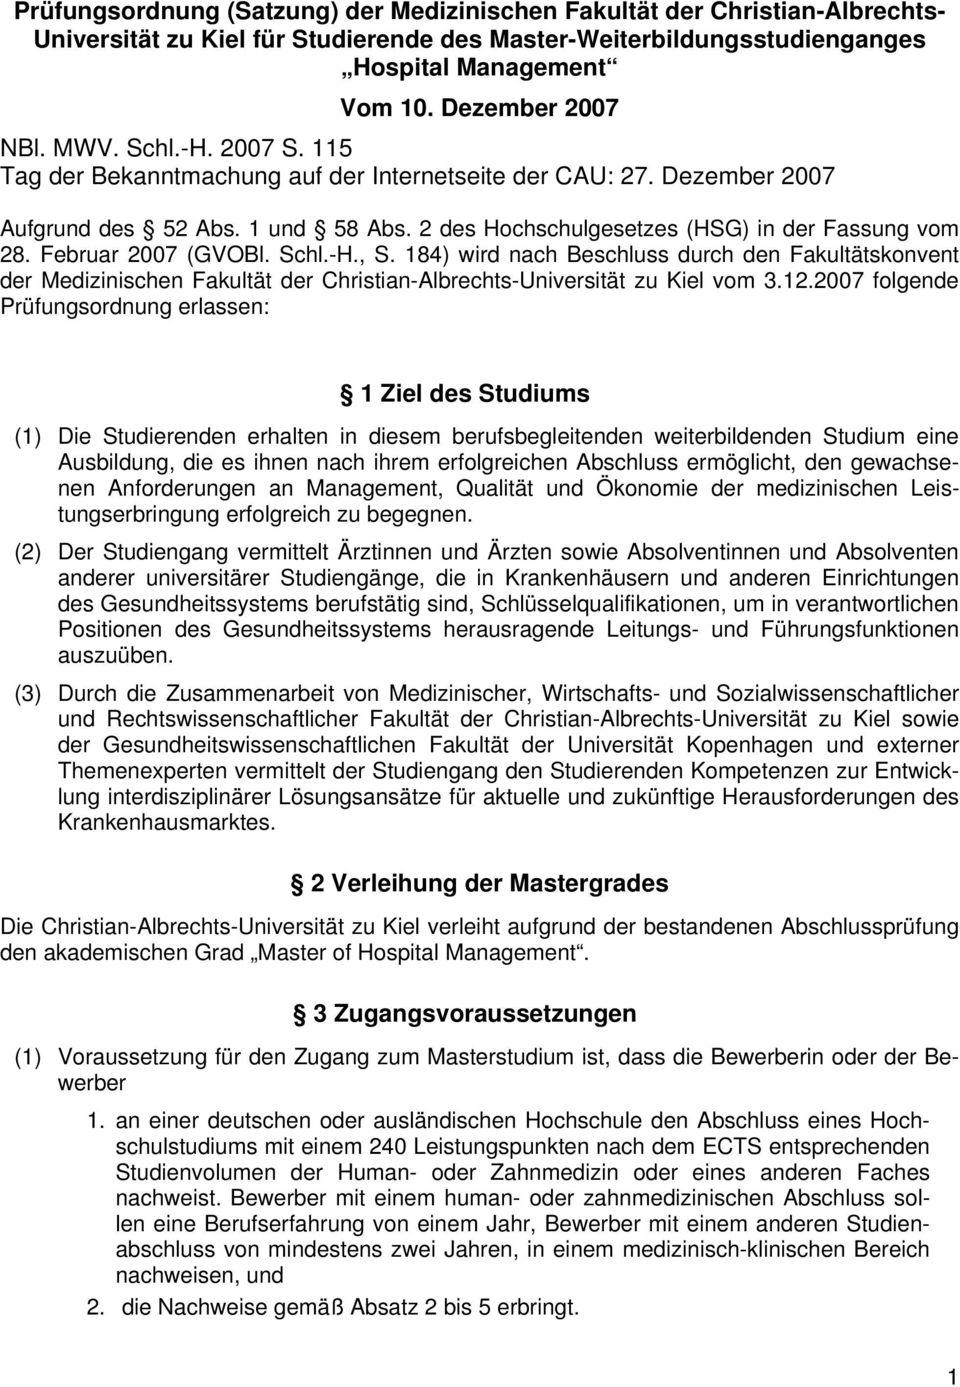 Februar 2007 (GVOBl. Schl.-H., S. 184) wird nach Beschluss durch den Fakultätskonvent der Medizinischen Fakultät der Christian-Albrechts-Universität zu Kiel vom 3.12.